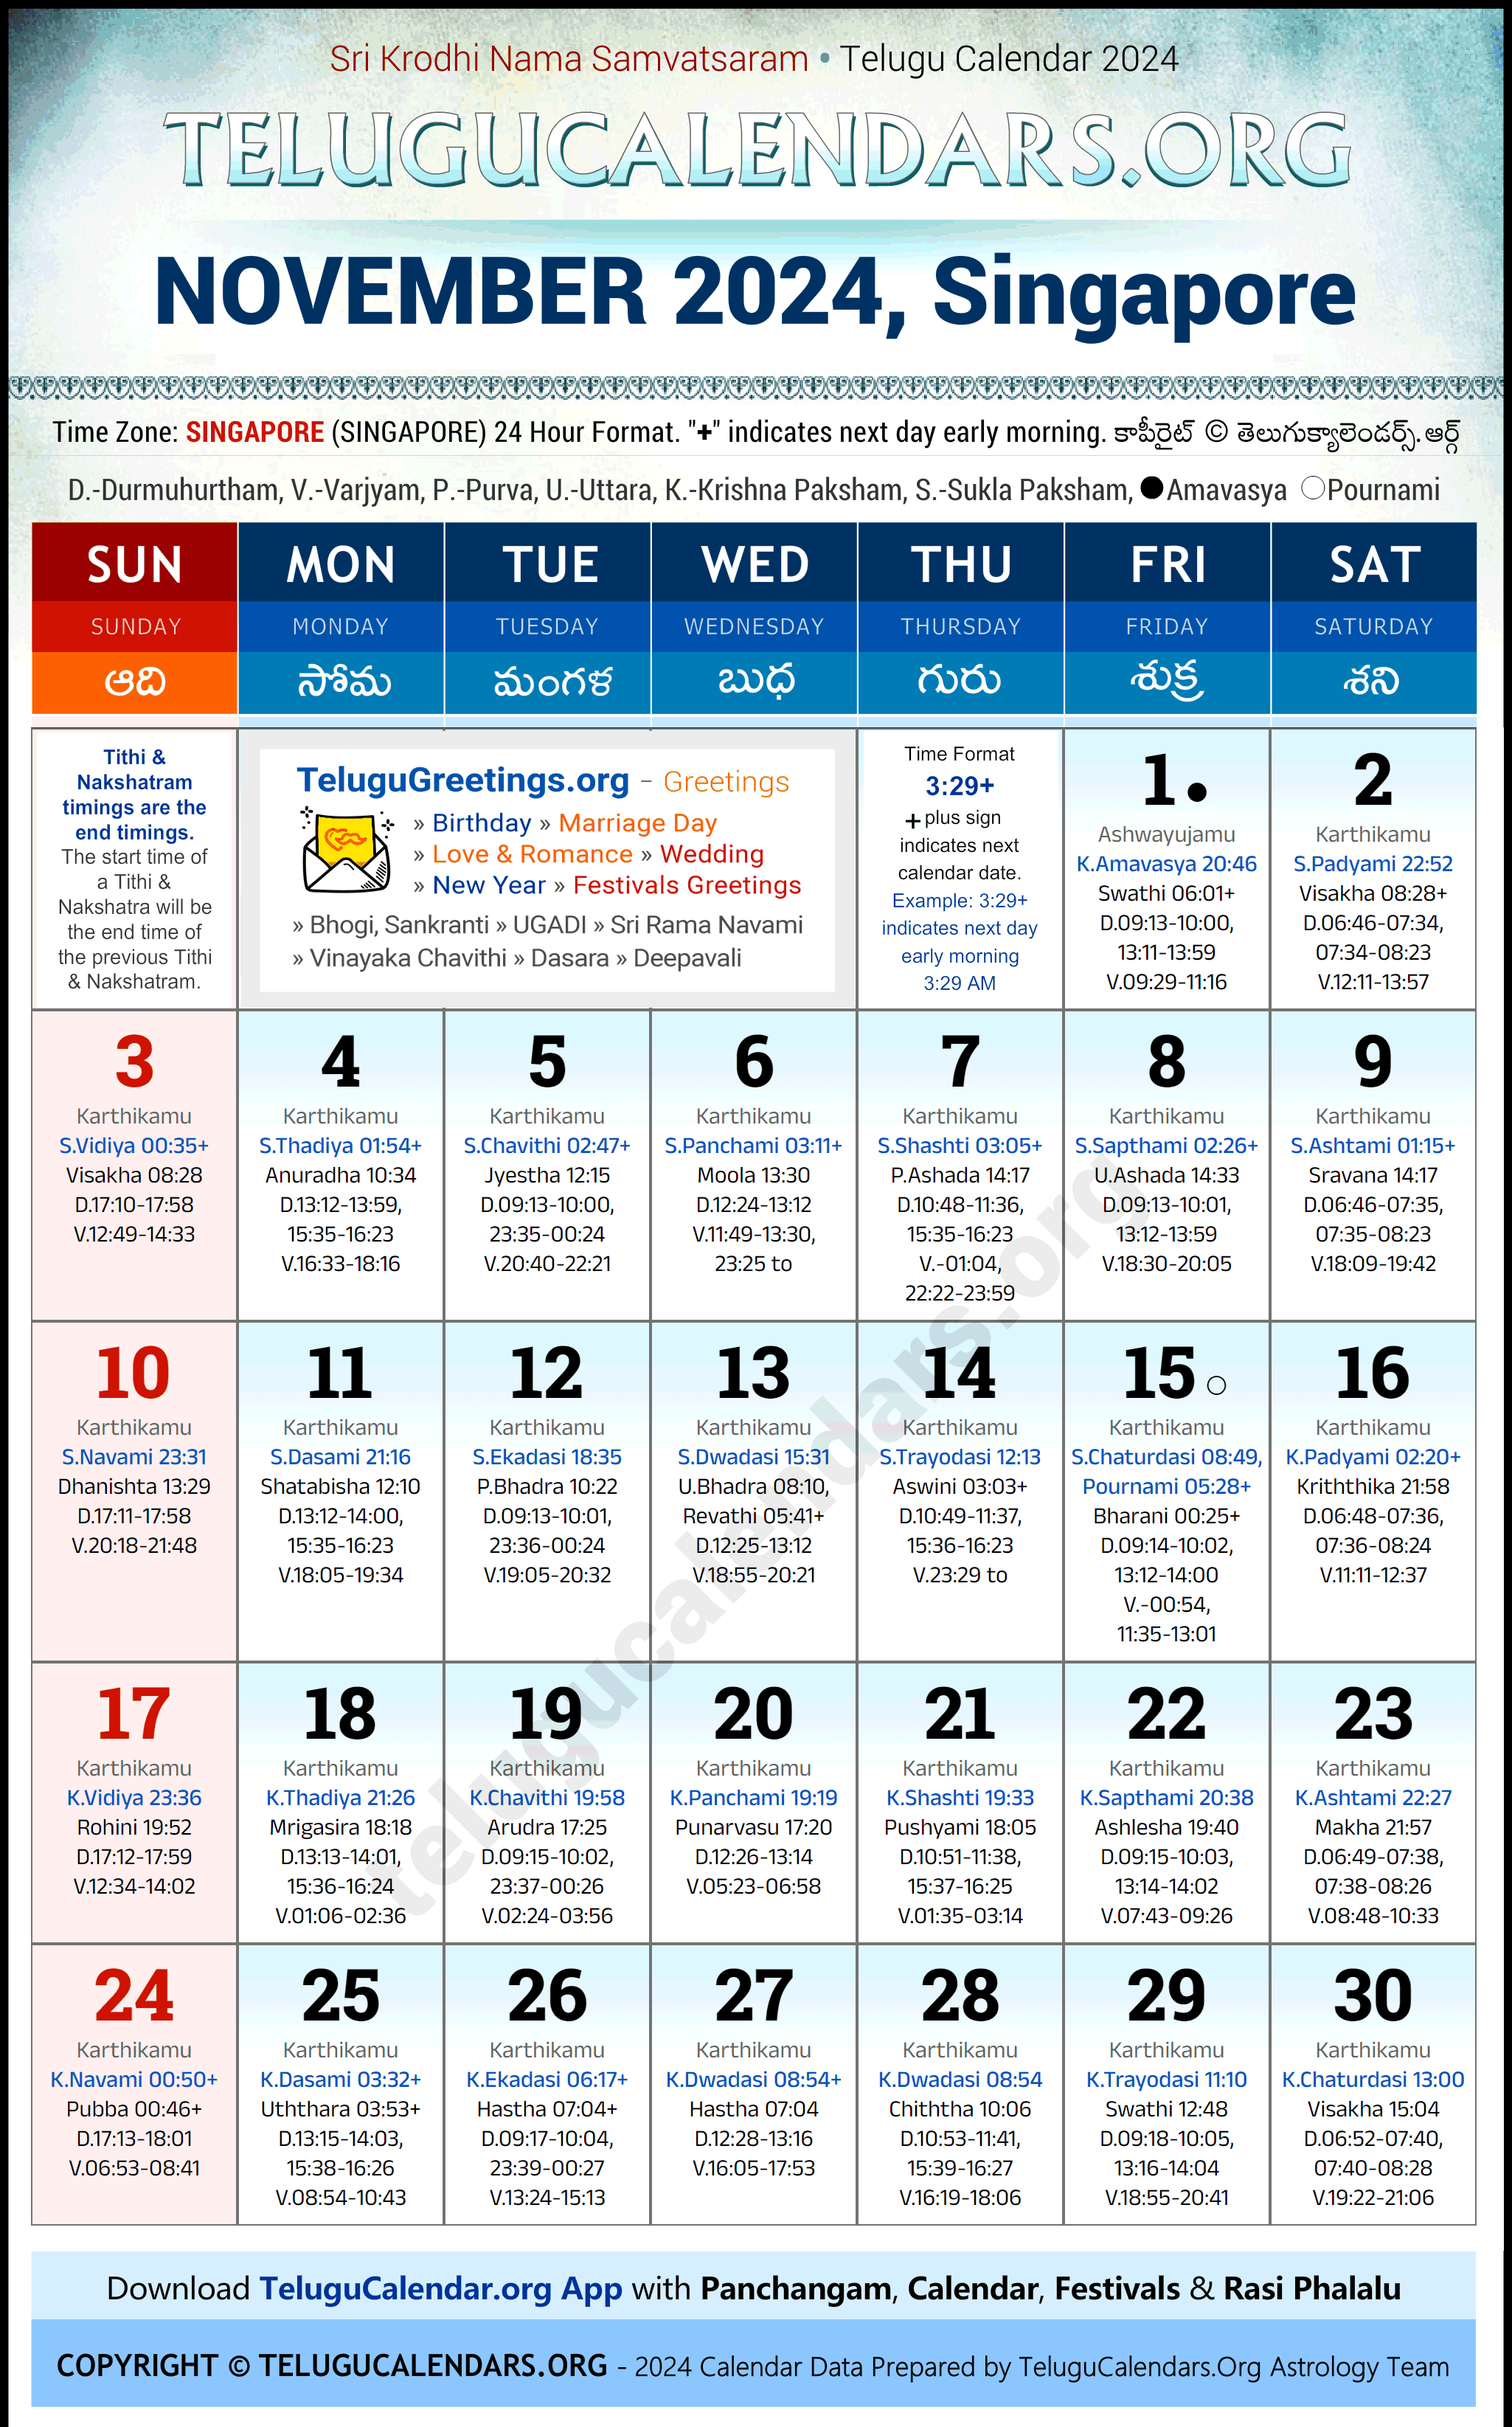 Telugu Calendar 2024 November Festivals for Singapore